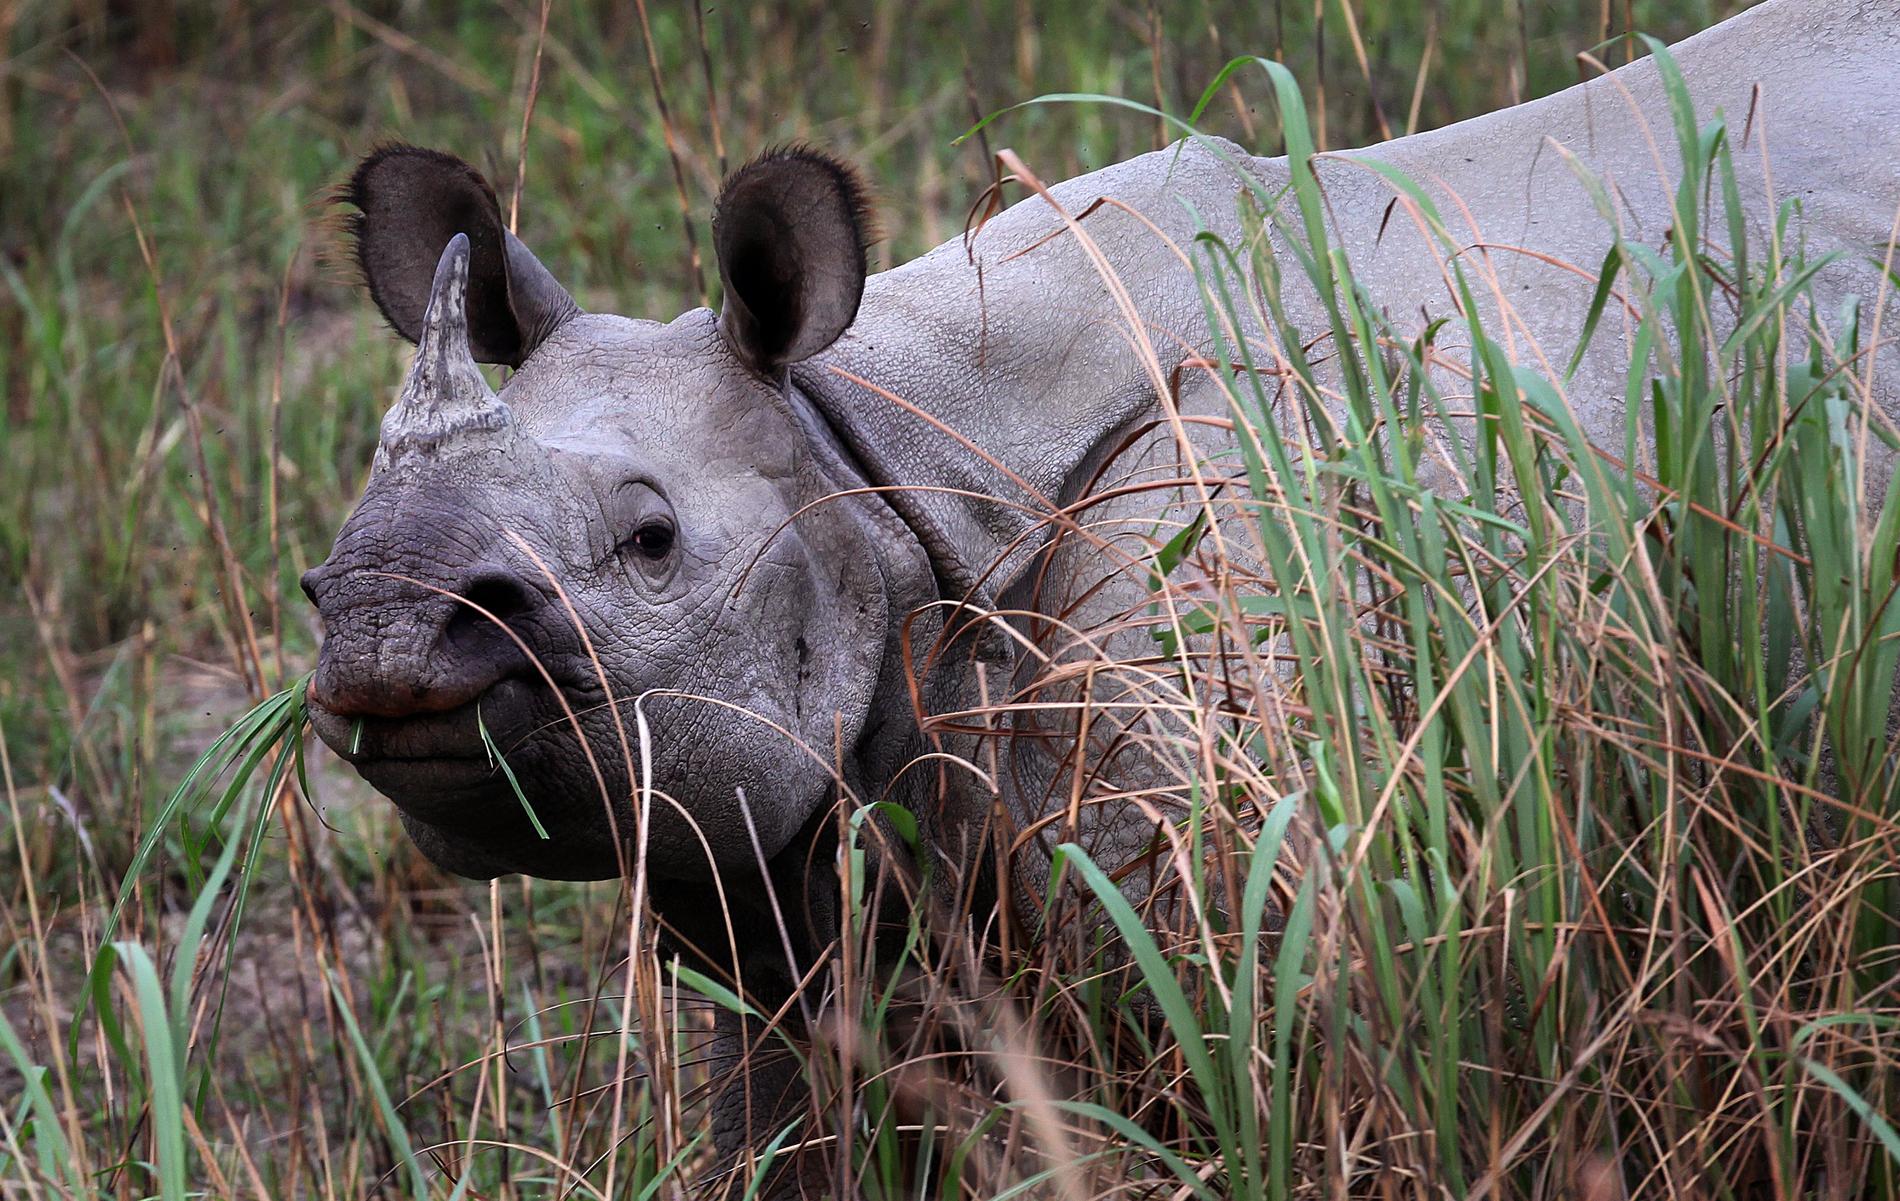 Genom hårt arbete för att skydda arten mot tjuvjägare och andra faror ökade antalet indiska noshörningar under 2022 för fjärde gången i rad. En av det gångna årets goda nyheter.